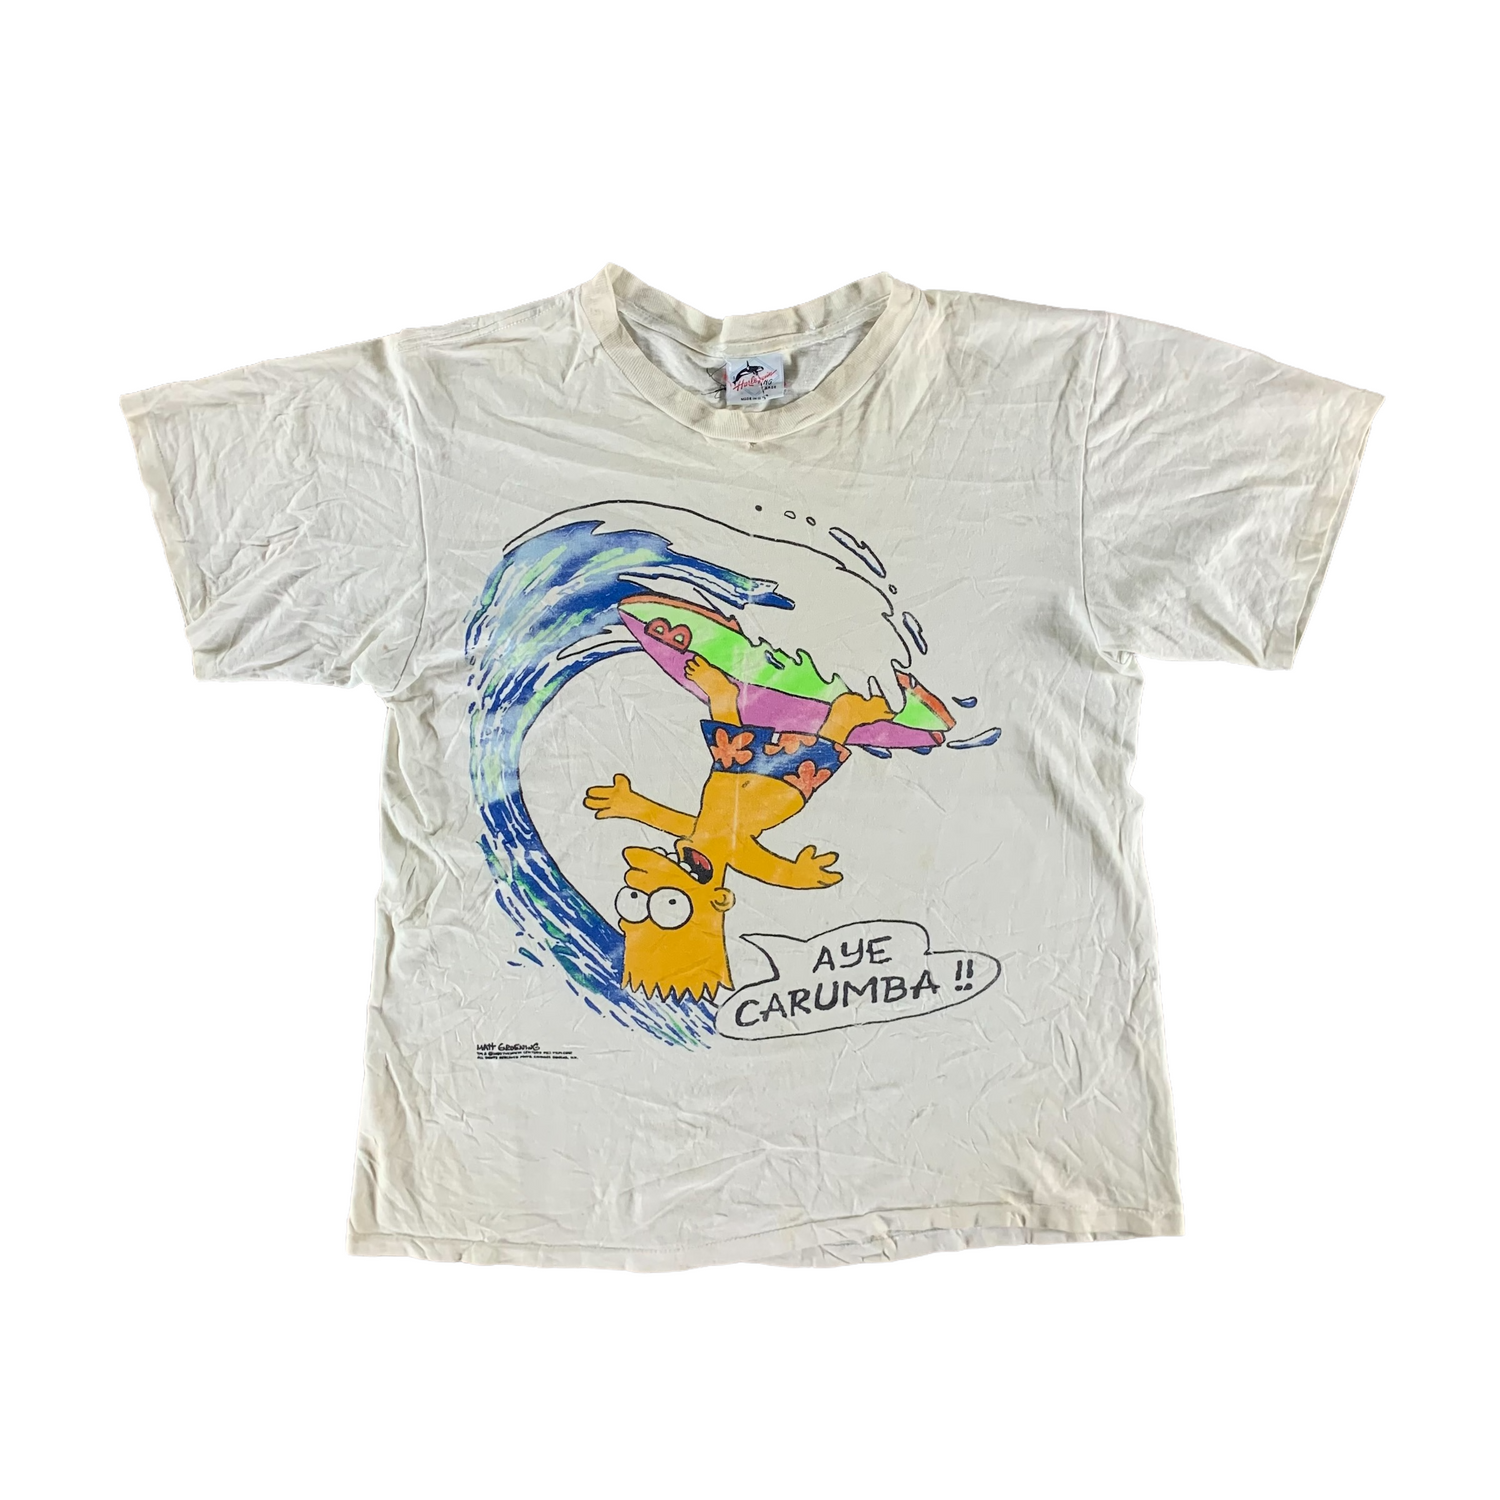 Vintage 1990s Bart Simpson T-shirt size Large